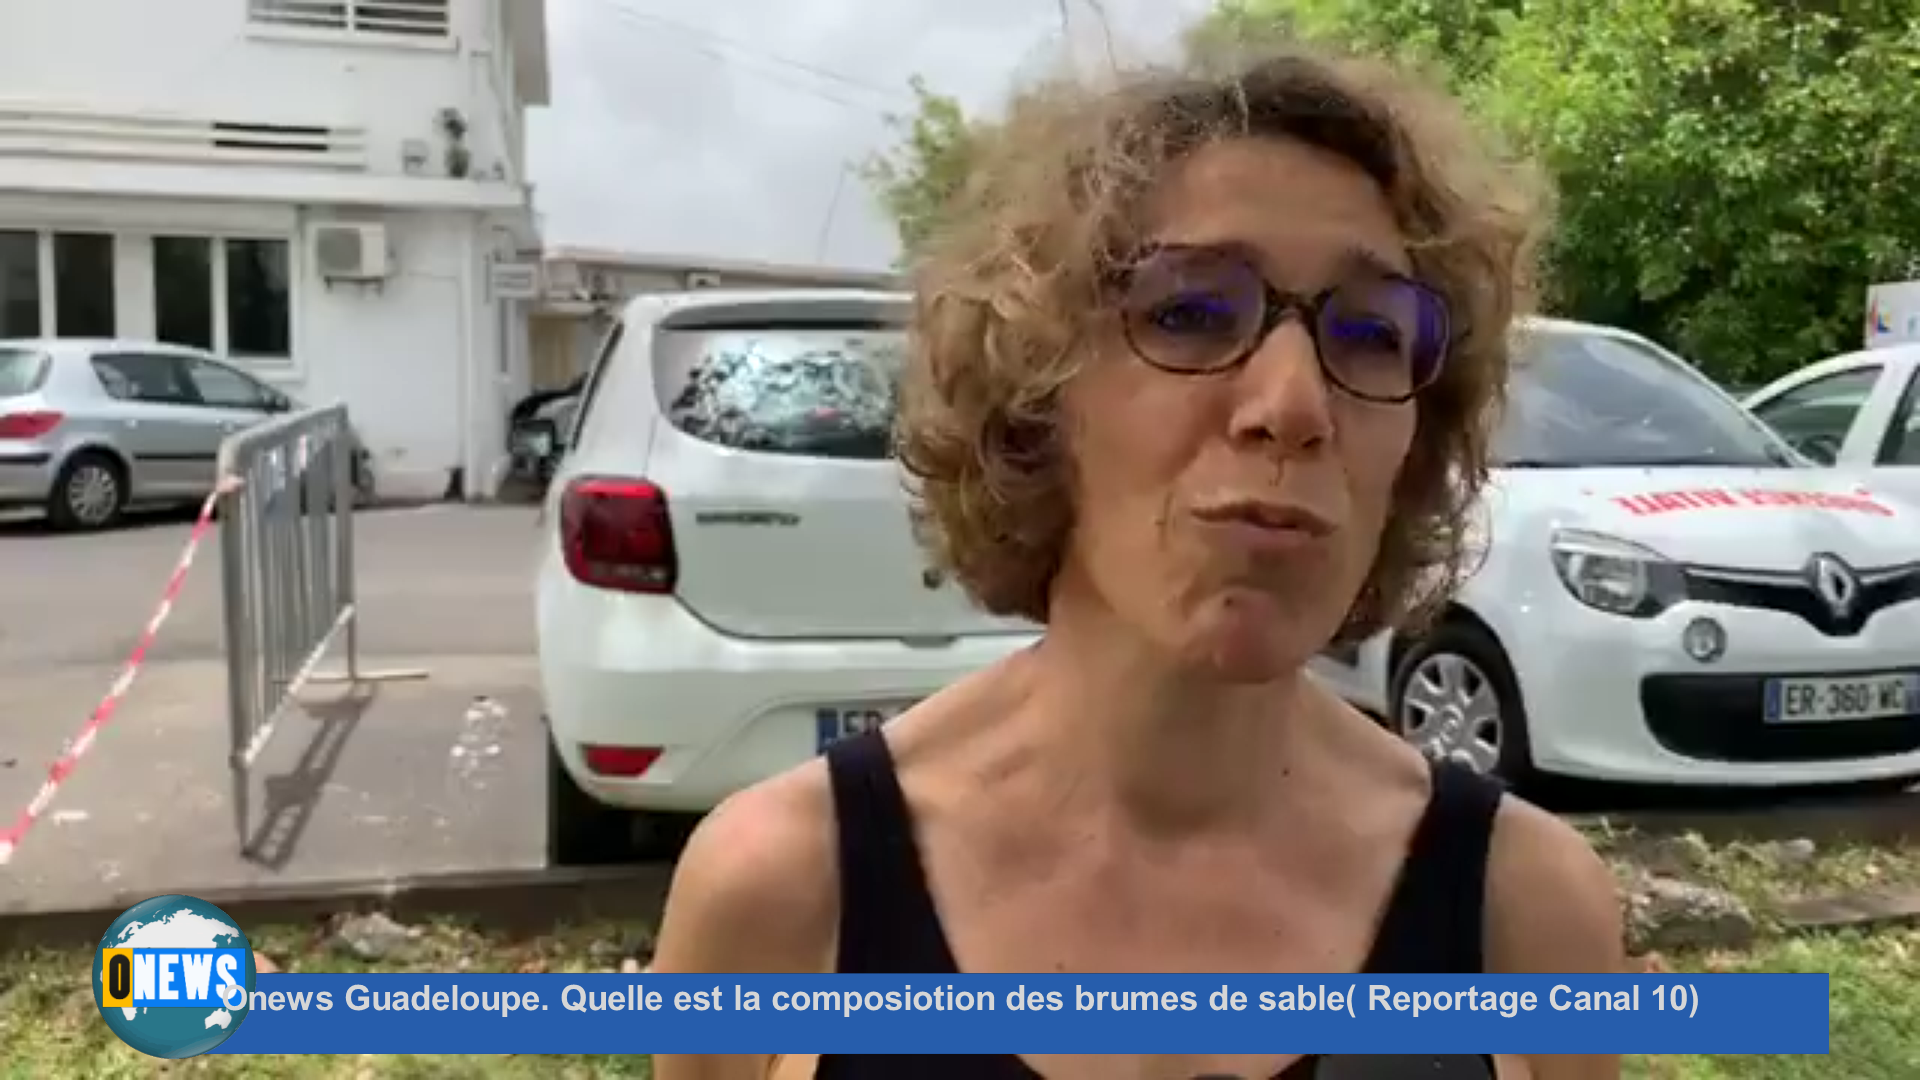 [Vidéo] Onews Guadeloupe. Quelle est la composiotion des brumes de sable( Reportage Canal 10)